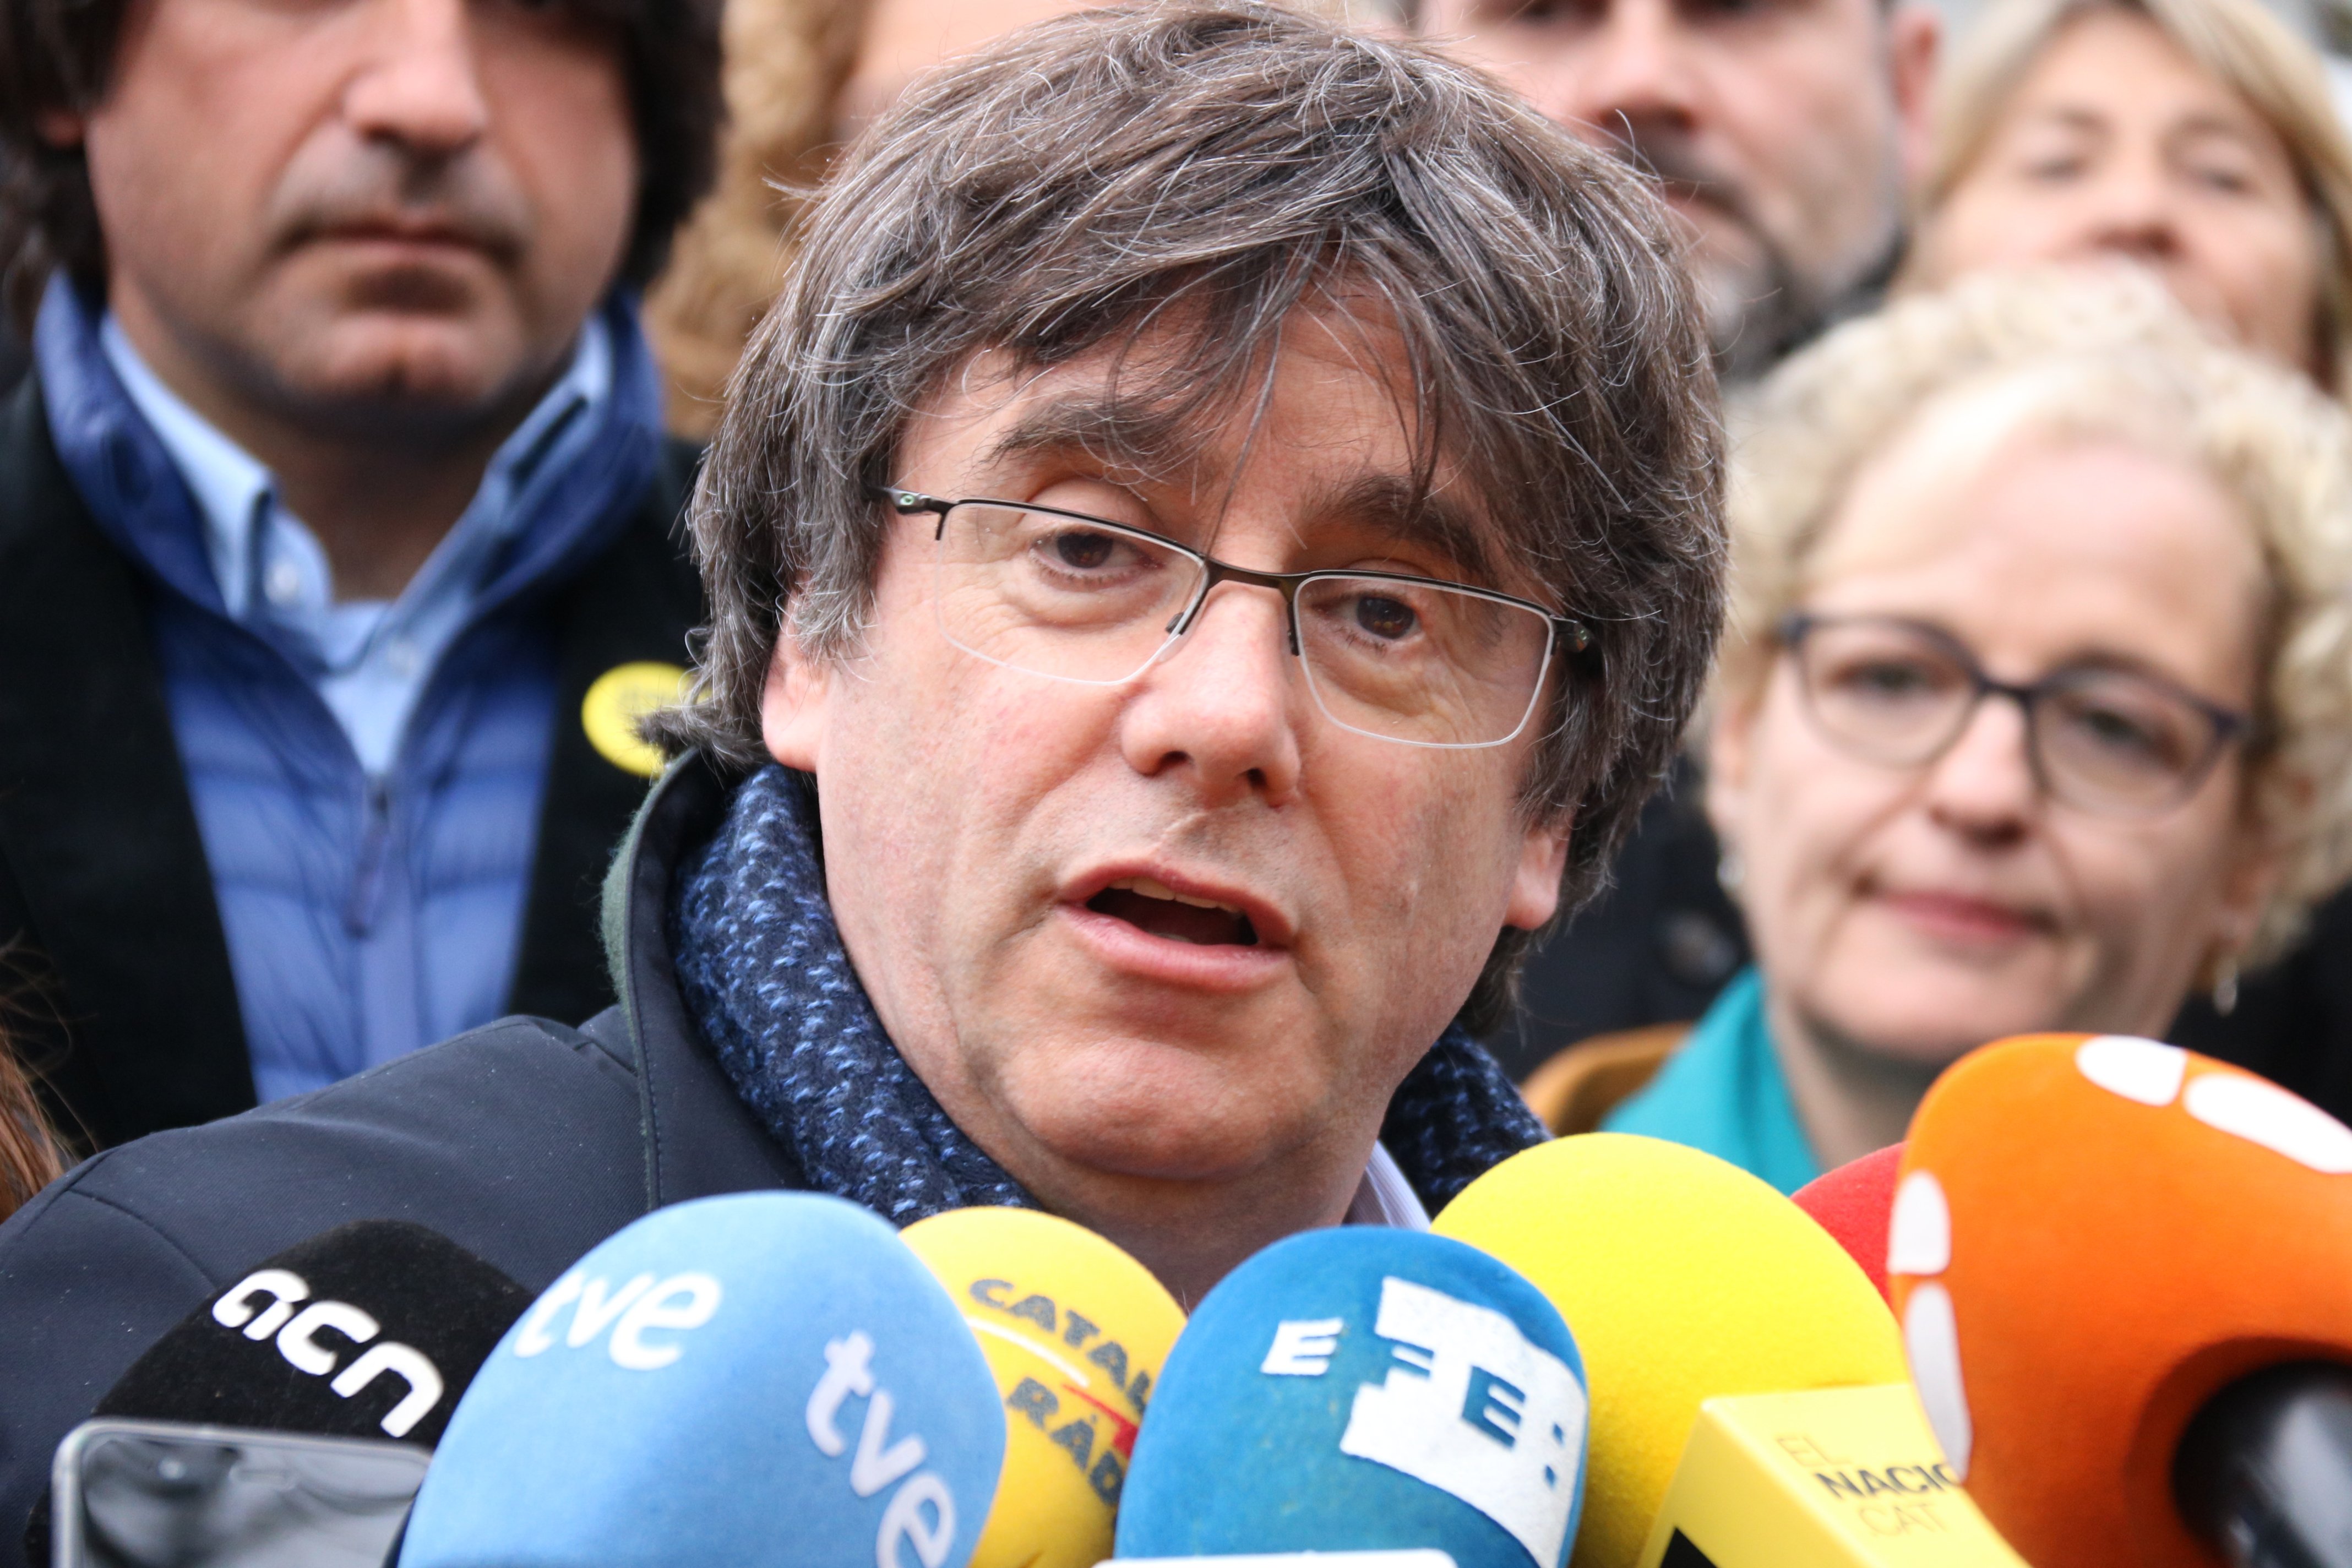 Puigdemont felicita Jordi Sànchez, Jordi Turull i Jordi Cuixart, "injustament empresonats"